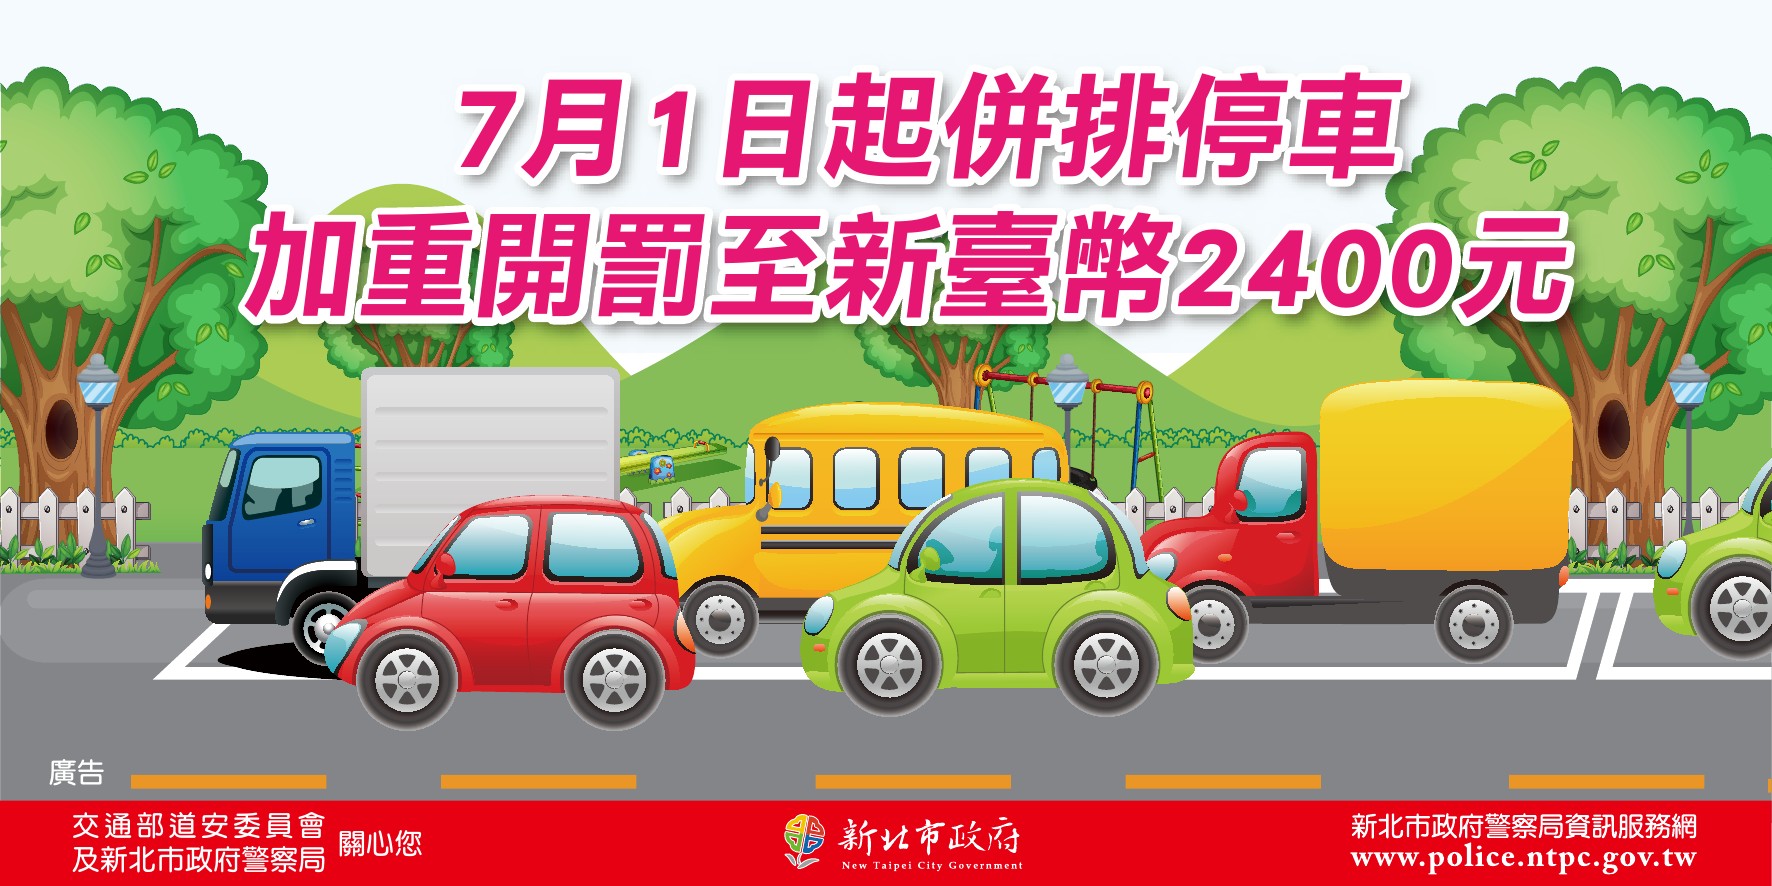 104年7月1日起，併排停車加重開罰至新臺幣2,400元